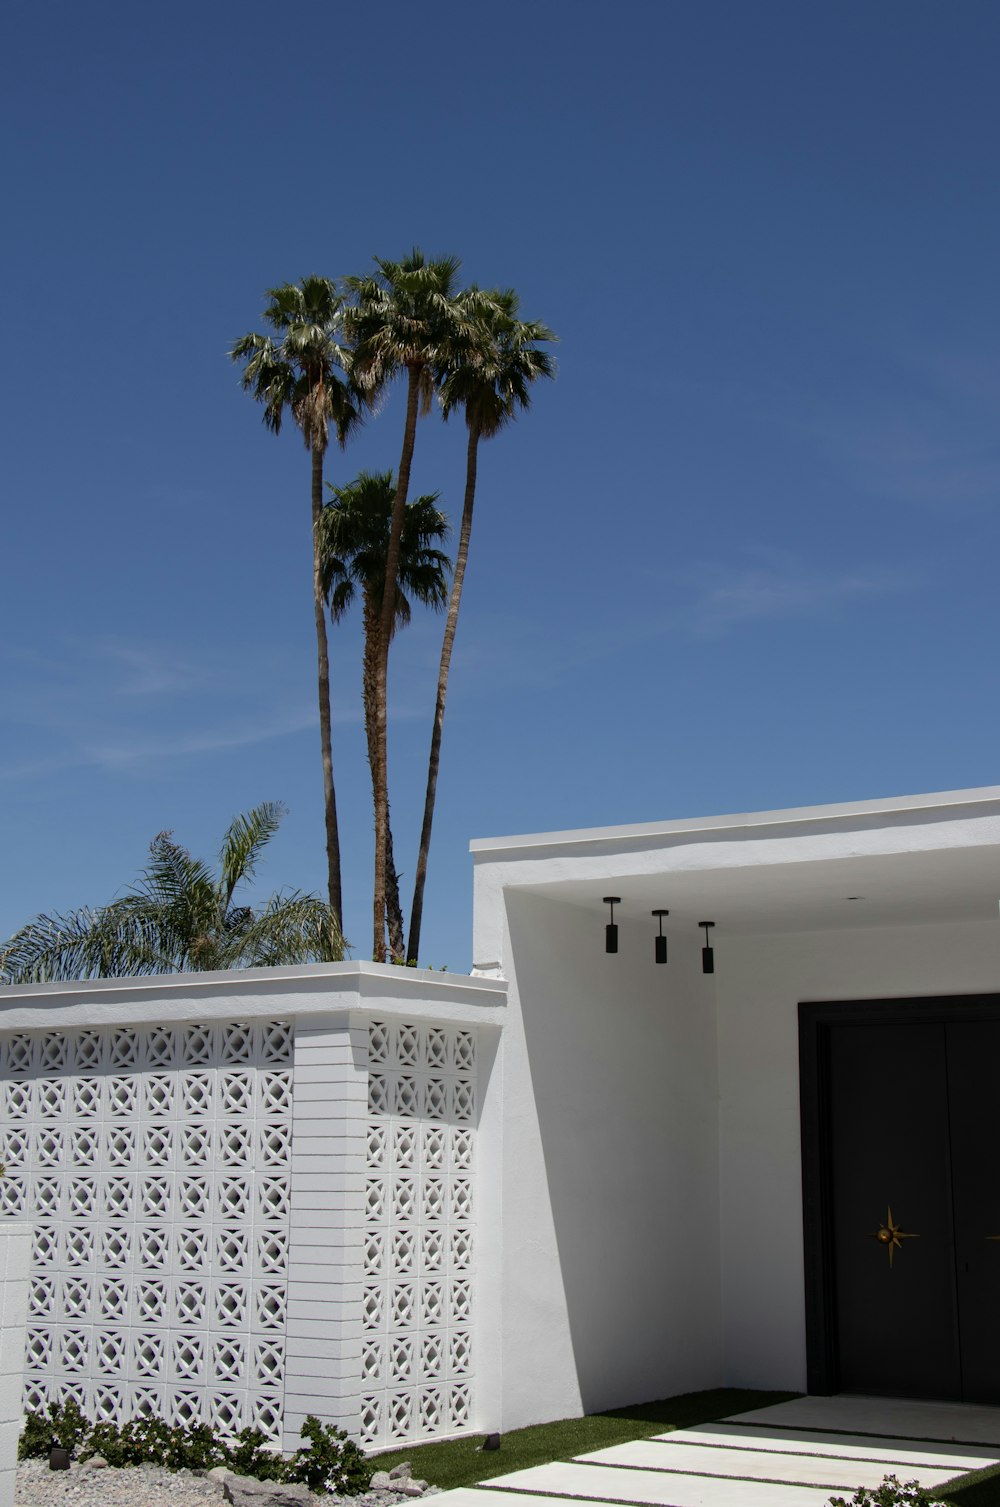 Palmier mexicain près d’une maison peinte en blanc